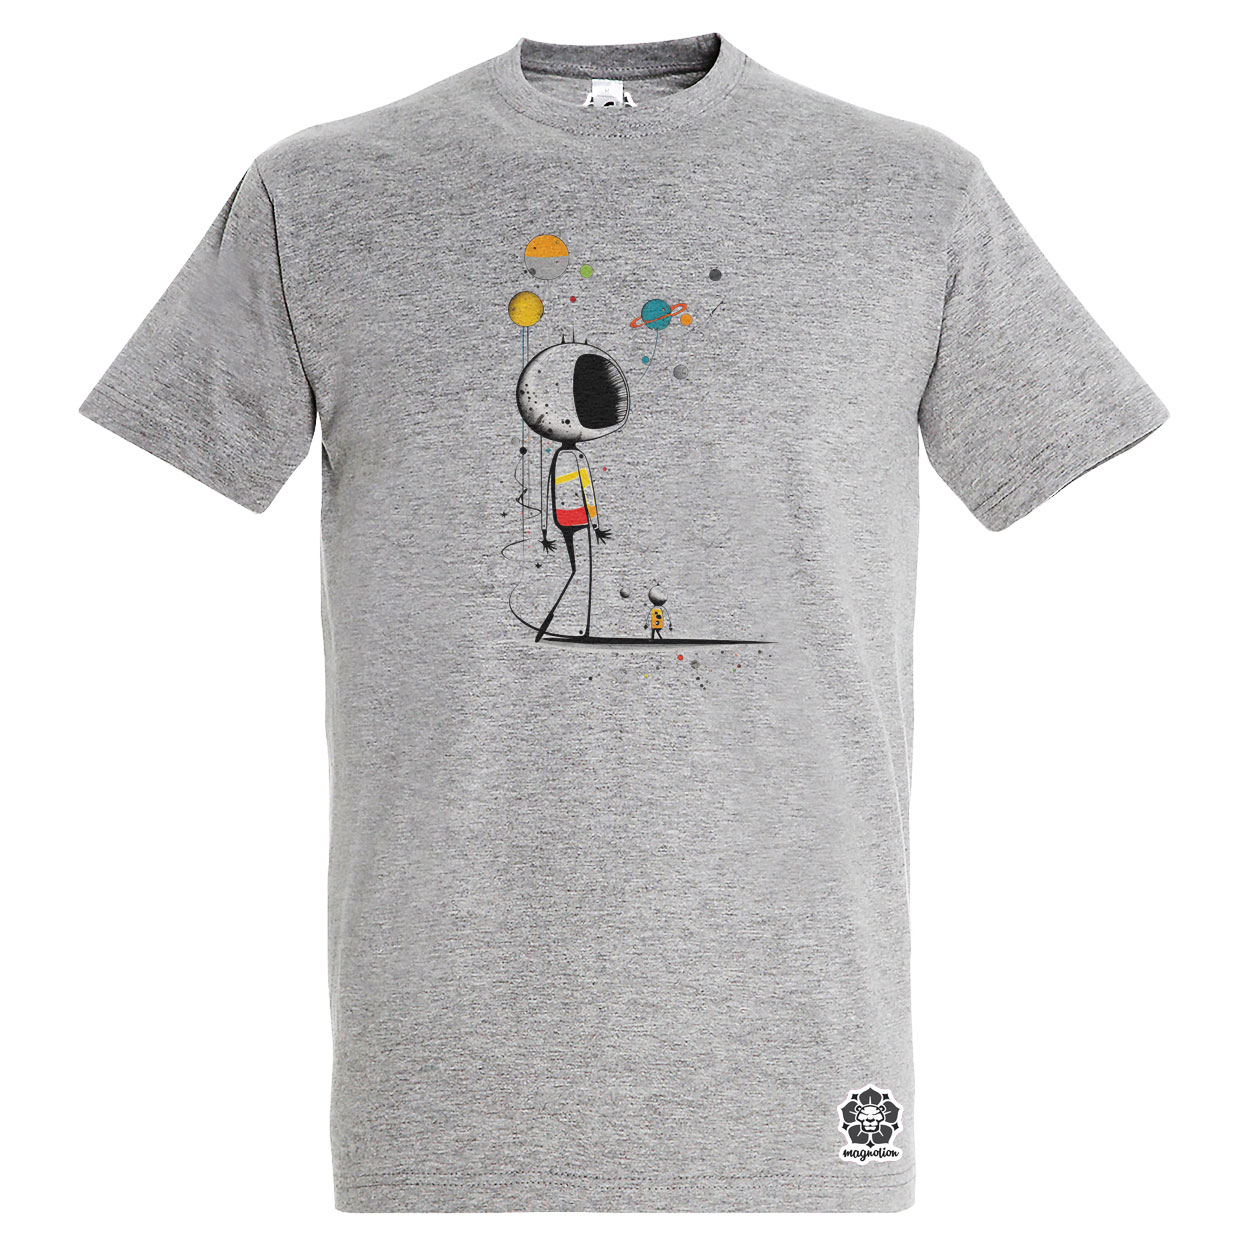 Joan Miró űr és asztronauta v6